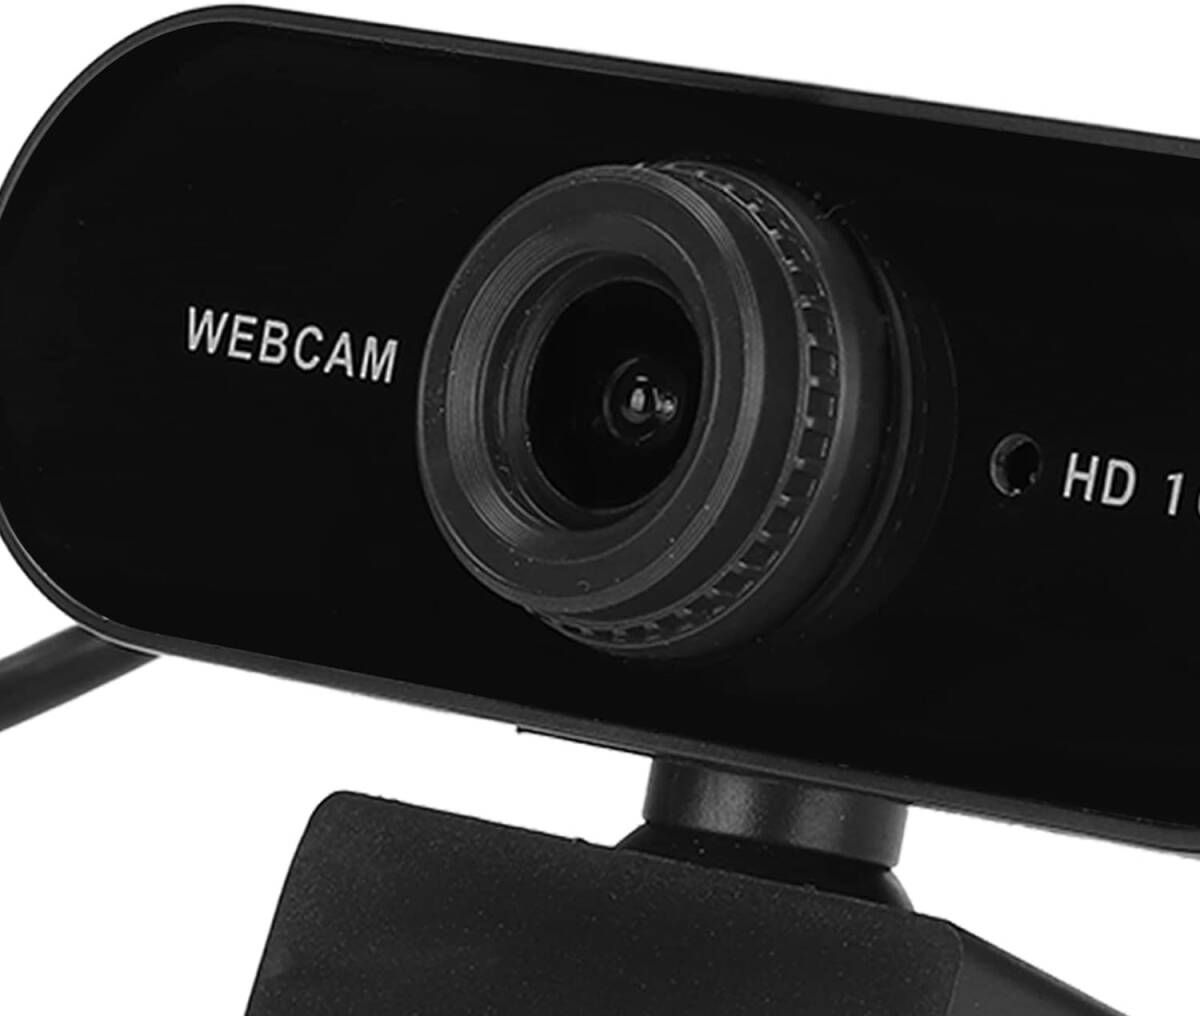 1080P コンピューター カメラ、360° 回転 30fps フレーム レート USB ウェブカメラ、会議ビデオ通話用のマイク付き(黒)